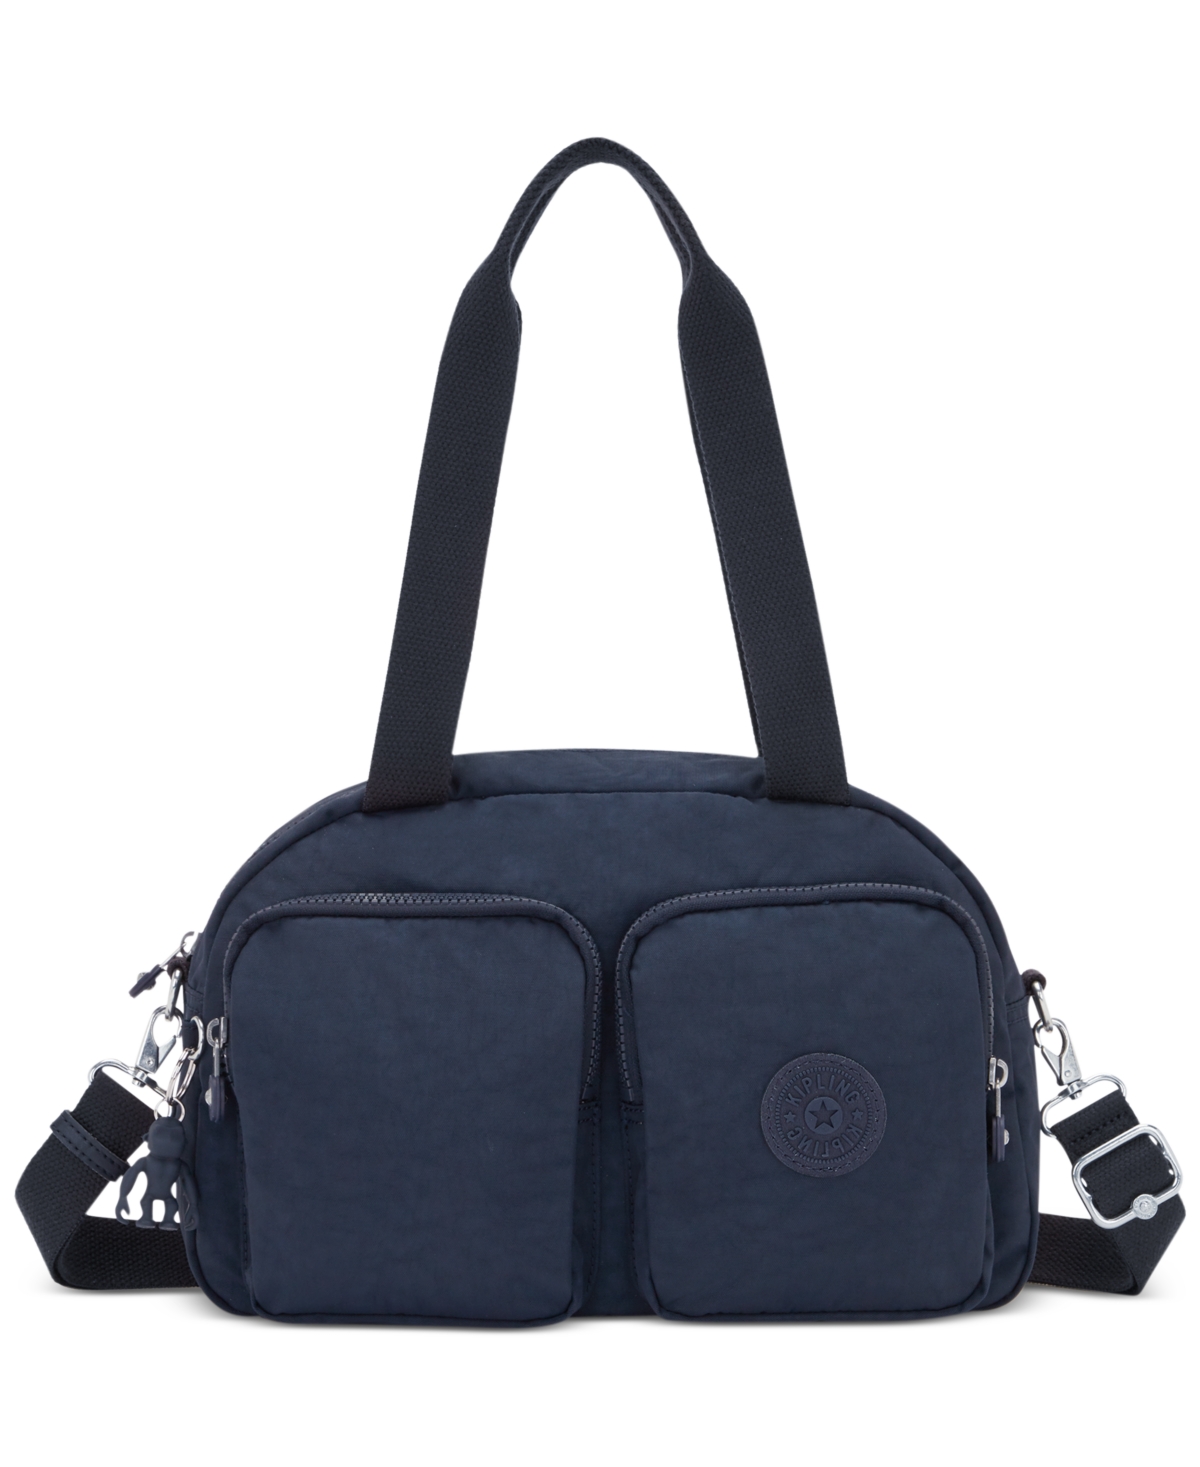 Cool Defea Convertible Handbag - Blue Bleu